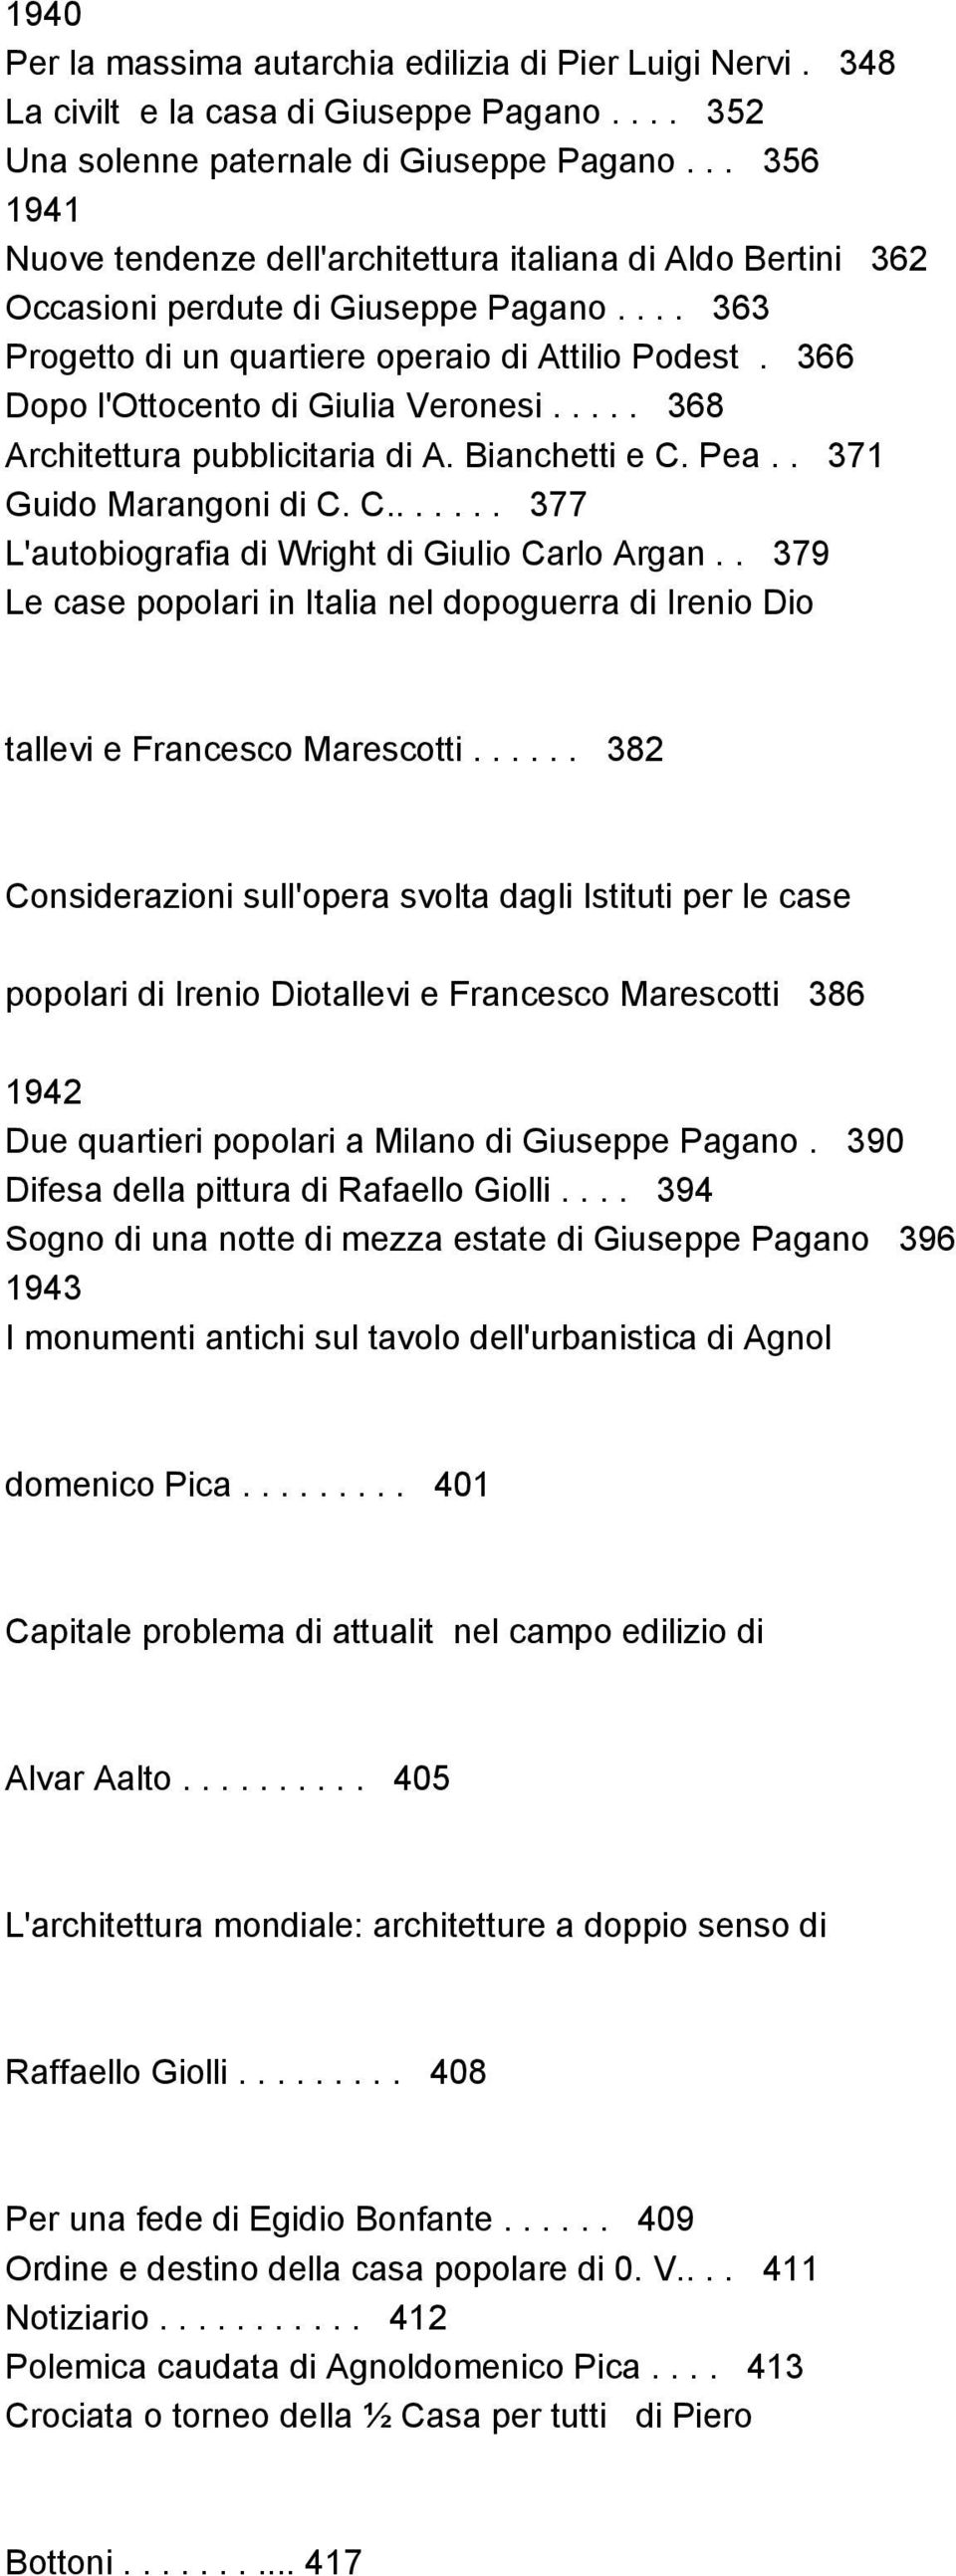 366 Dopo l'ottocento di Giulia Veronesi..... 368 Architettura pubblicitaria di A. Bianchetti e C. Pea.. 371 Guido Marangoni di C. C....... 377 L'autobiografia di Wright di Giulio Carlo Argan.